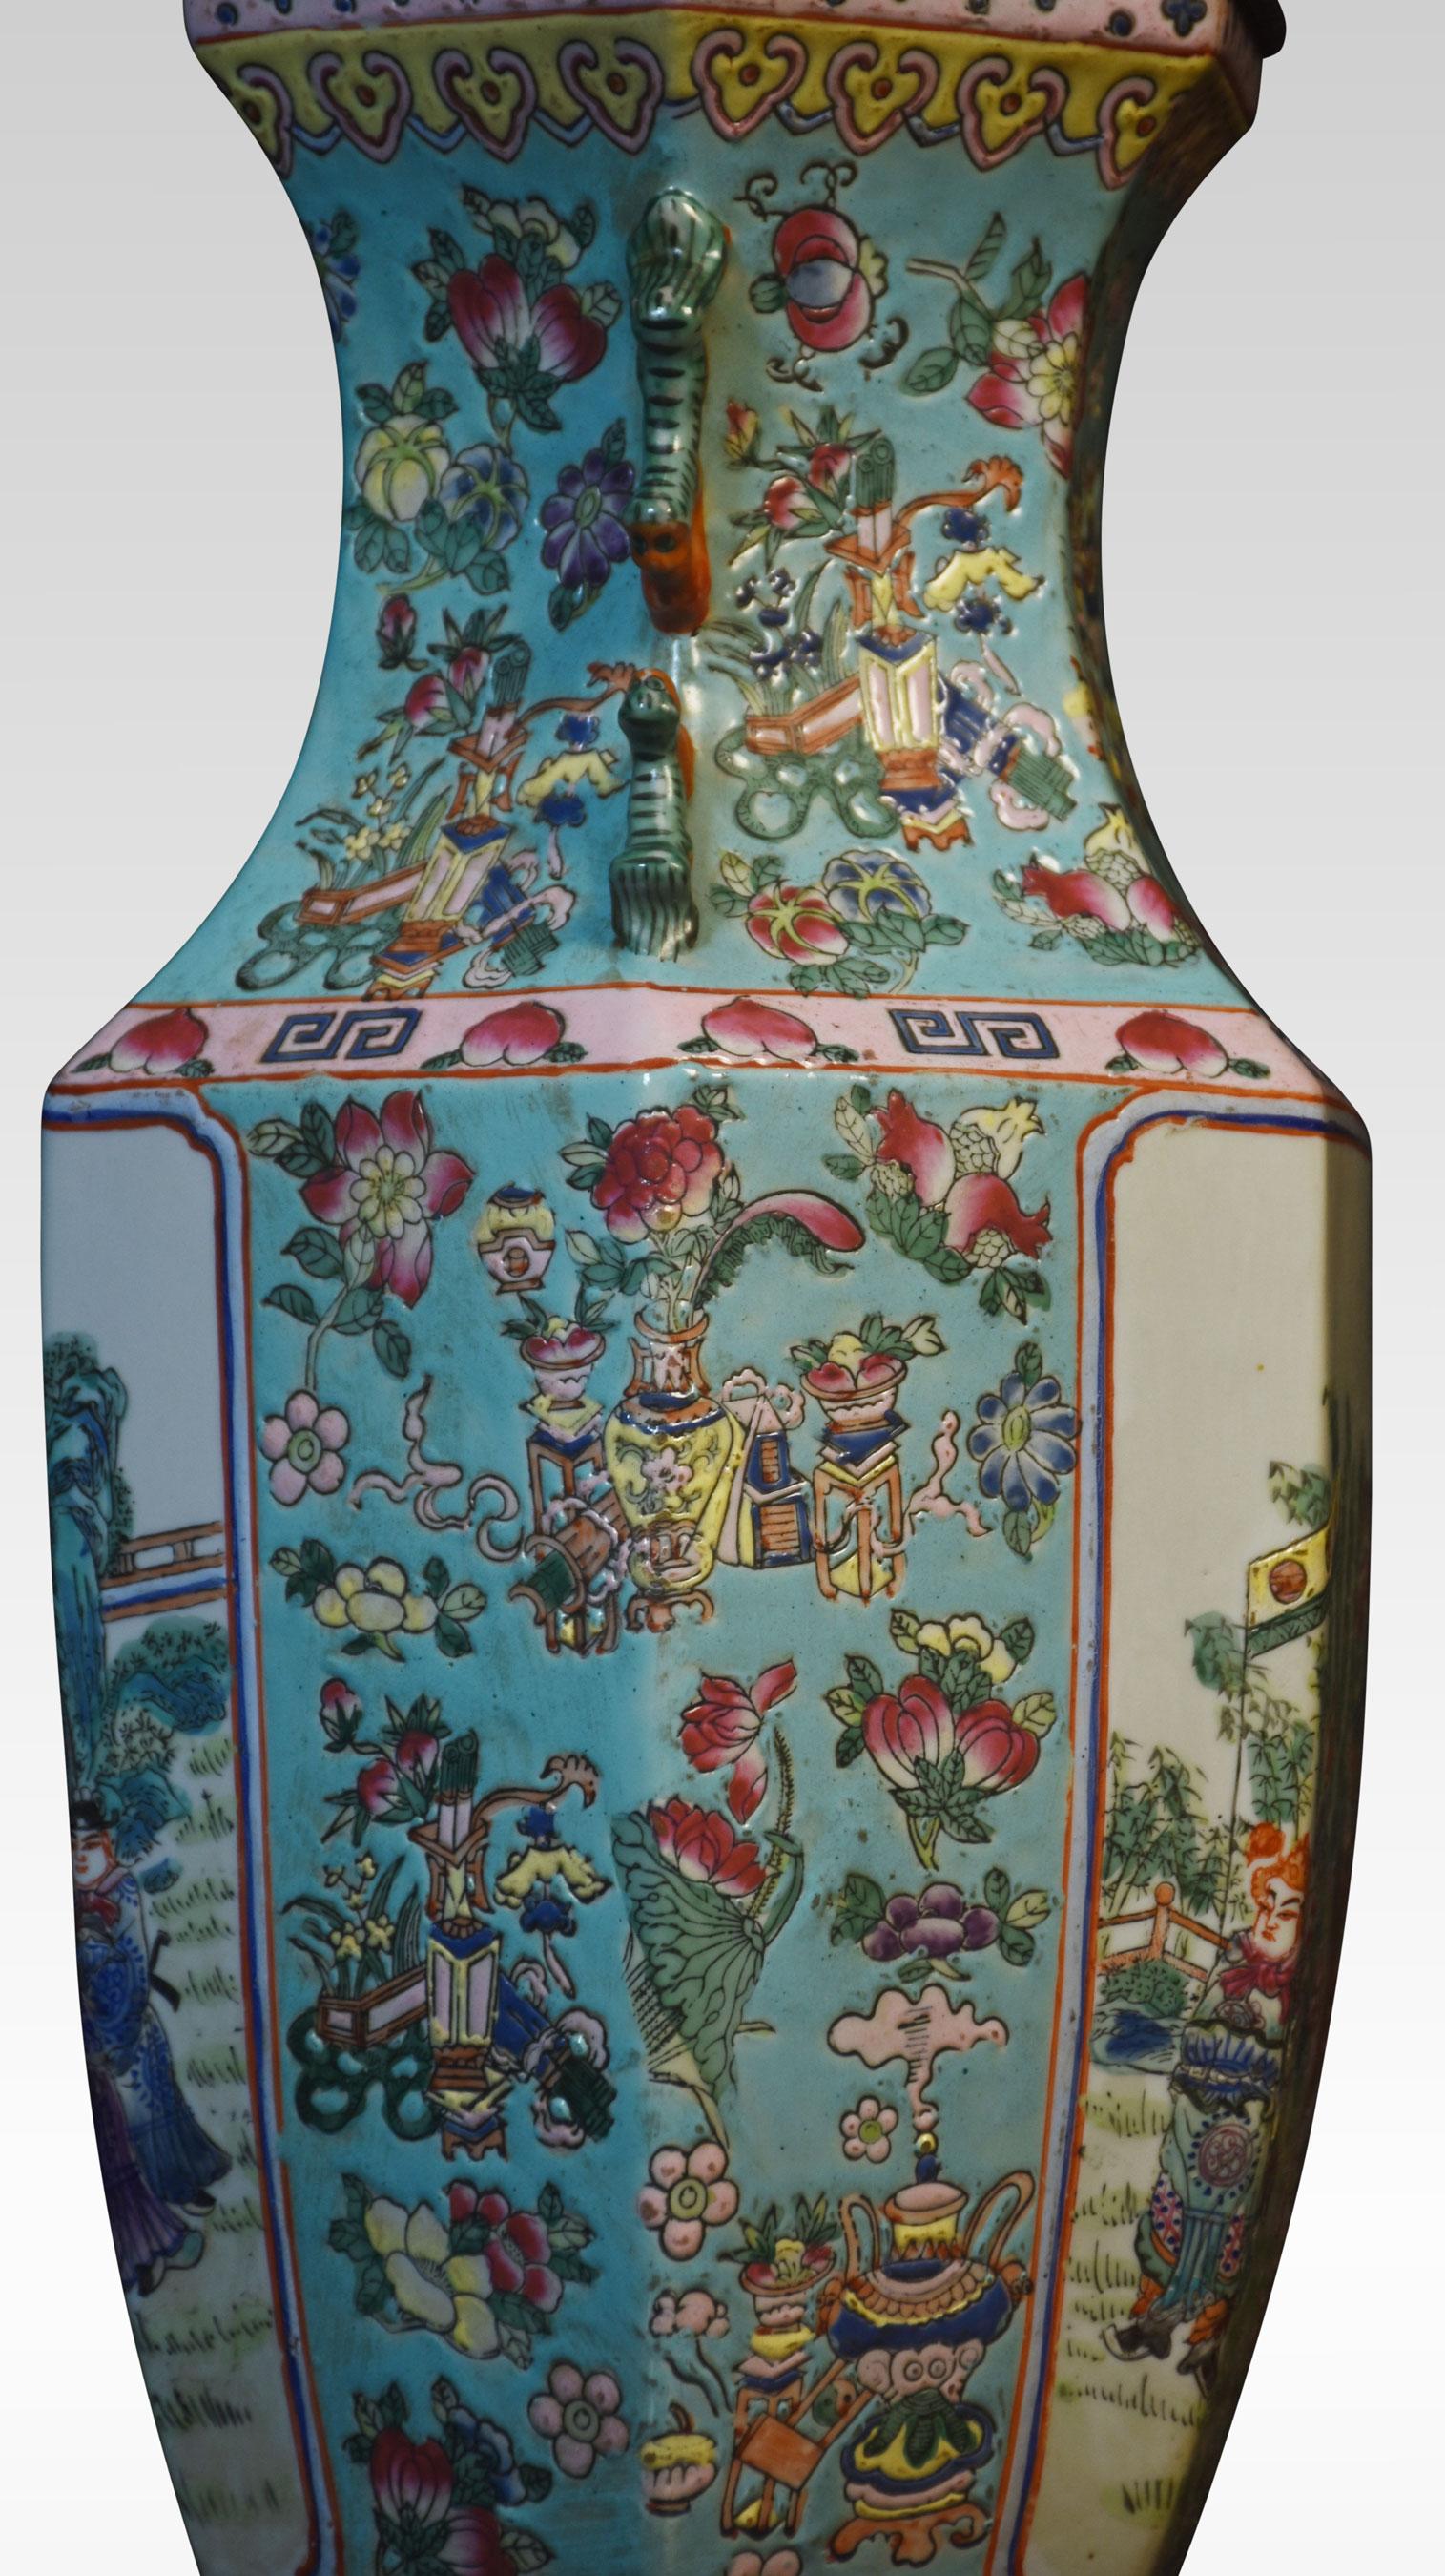 Lampe-vase chinoise de la famille rose avec des montures françaises en laiton doré, le vase de forme hexagonale avec des poignées de lion bouddhiste affrontées, les deux panneaux représentant des scènes de cour.
Dimensions
Hauteur 31.5